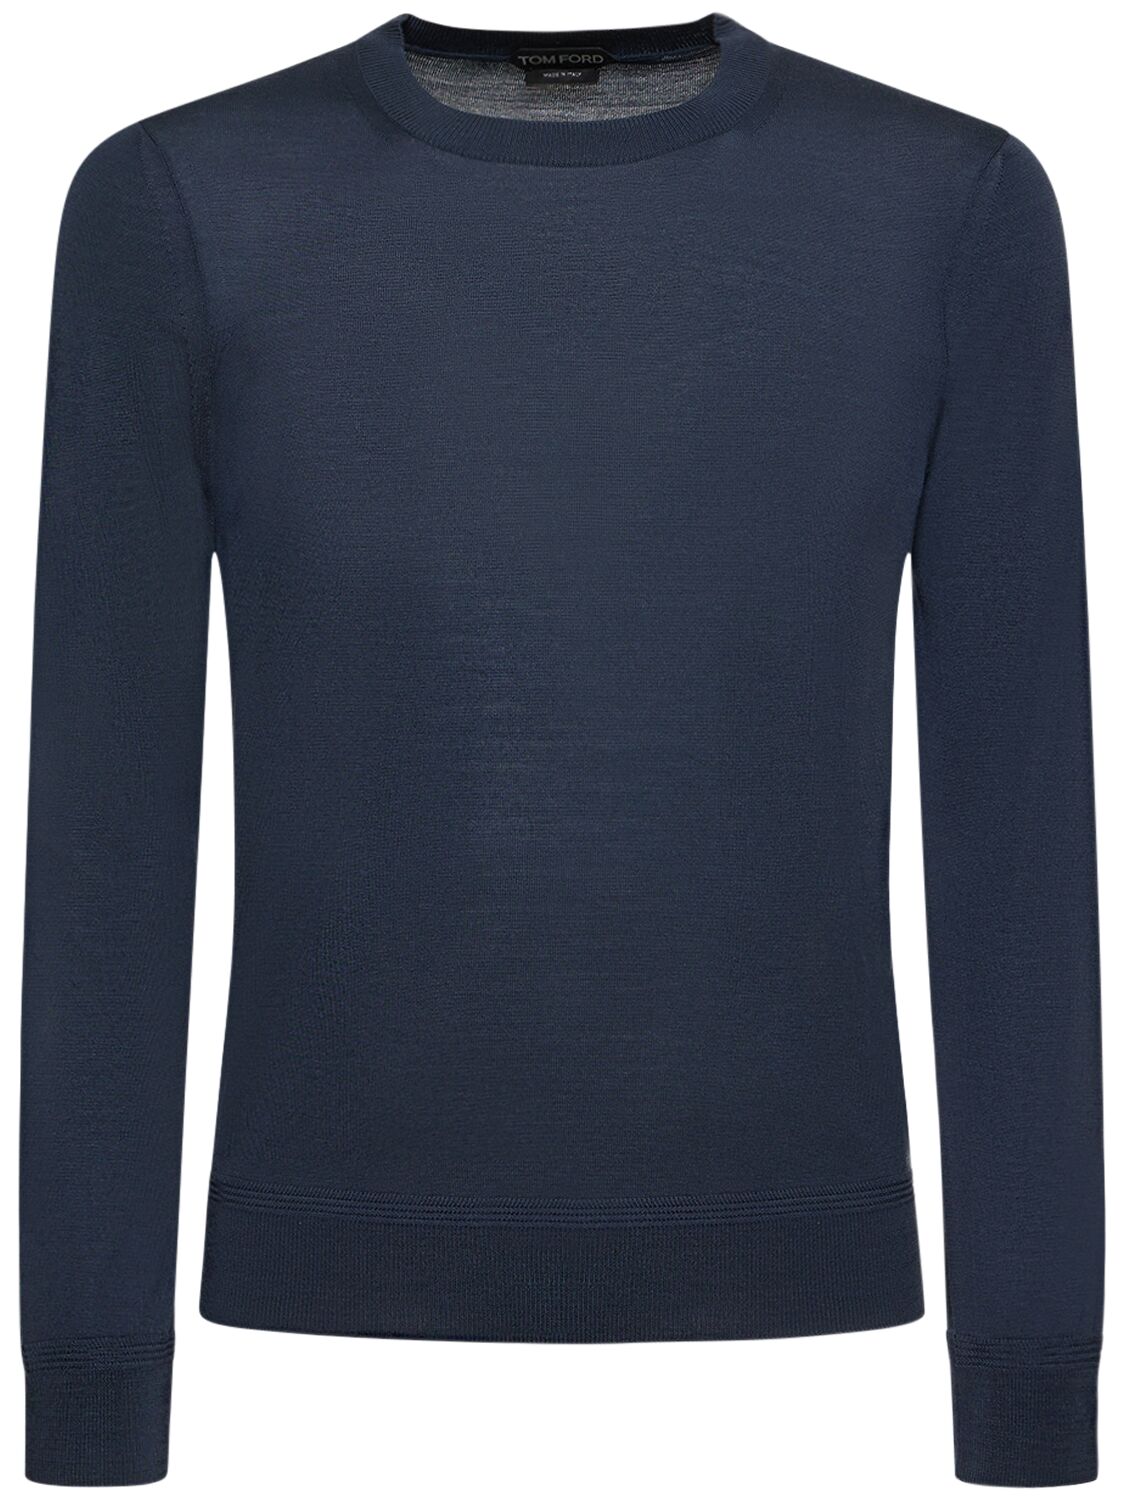 Fine Gauge Wool Knit Crewneck Sweater – MEN > CLOTHING > KNITWEAR